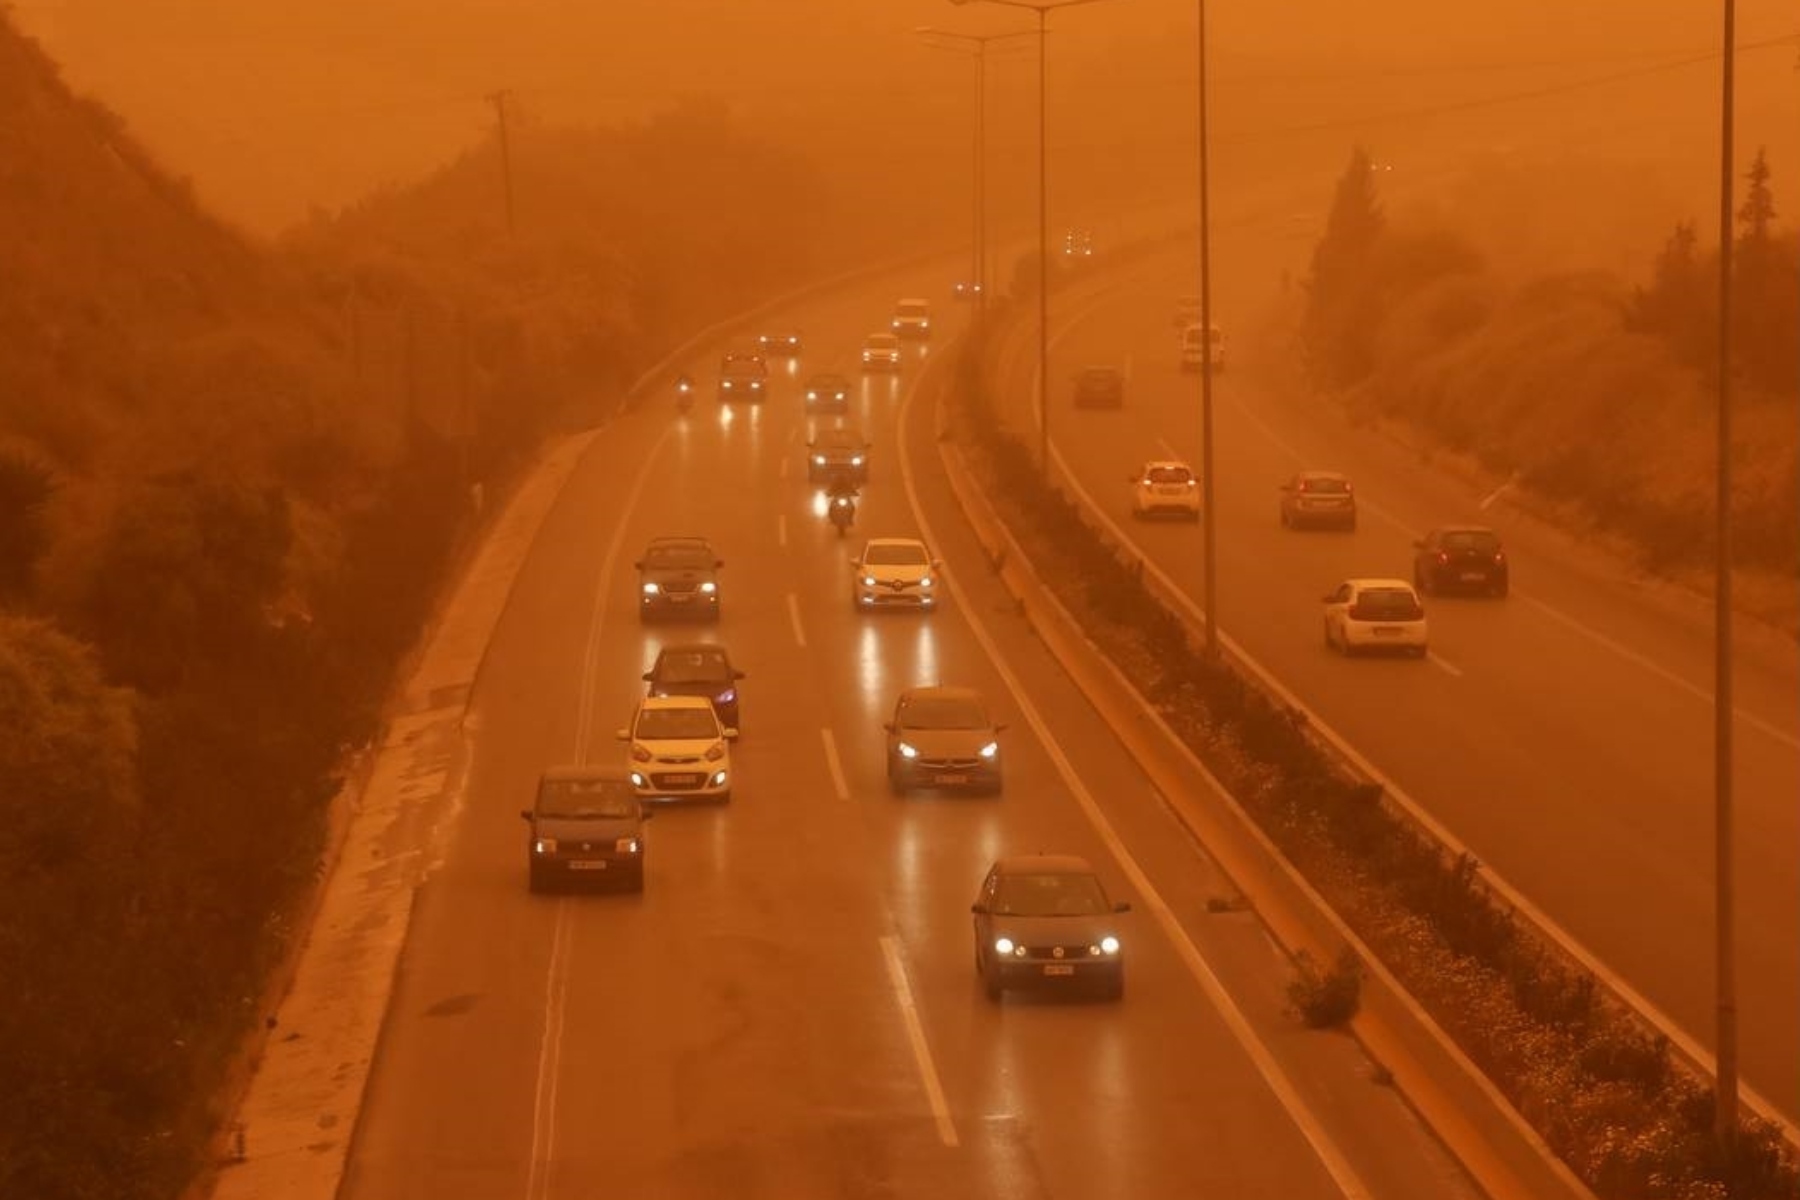 Σκόνη αέρας: Ποια είναι τα κυριότερα προβλήματα υγείας που μπορεί να επιφέρει η σκόνη στον αέρα;